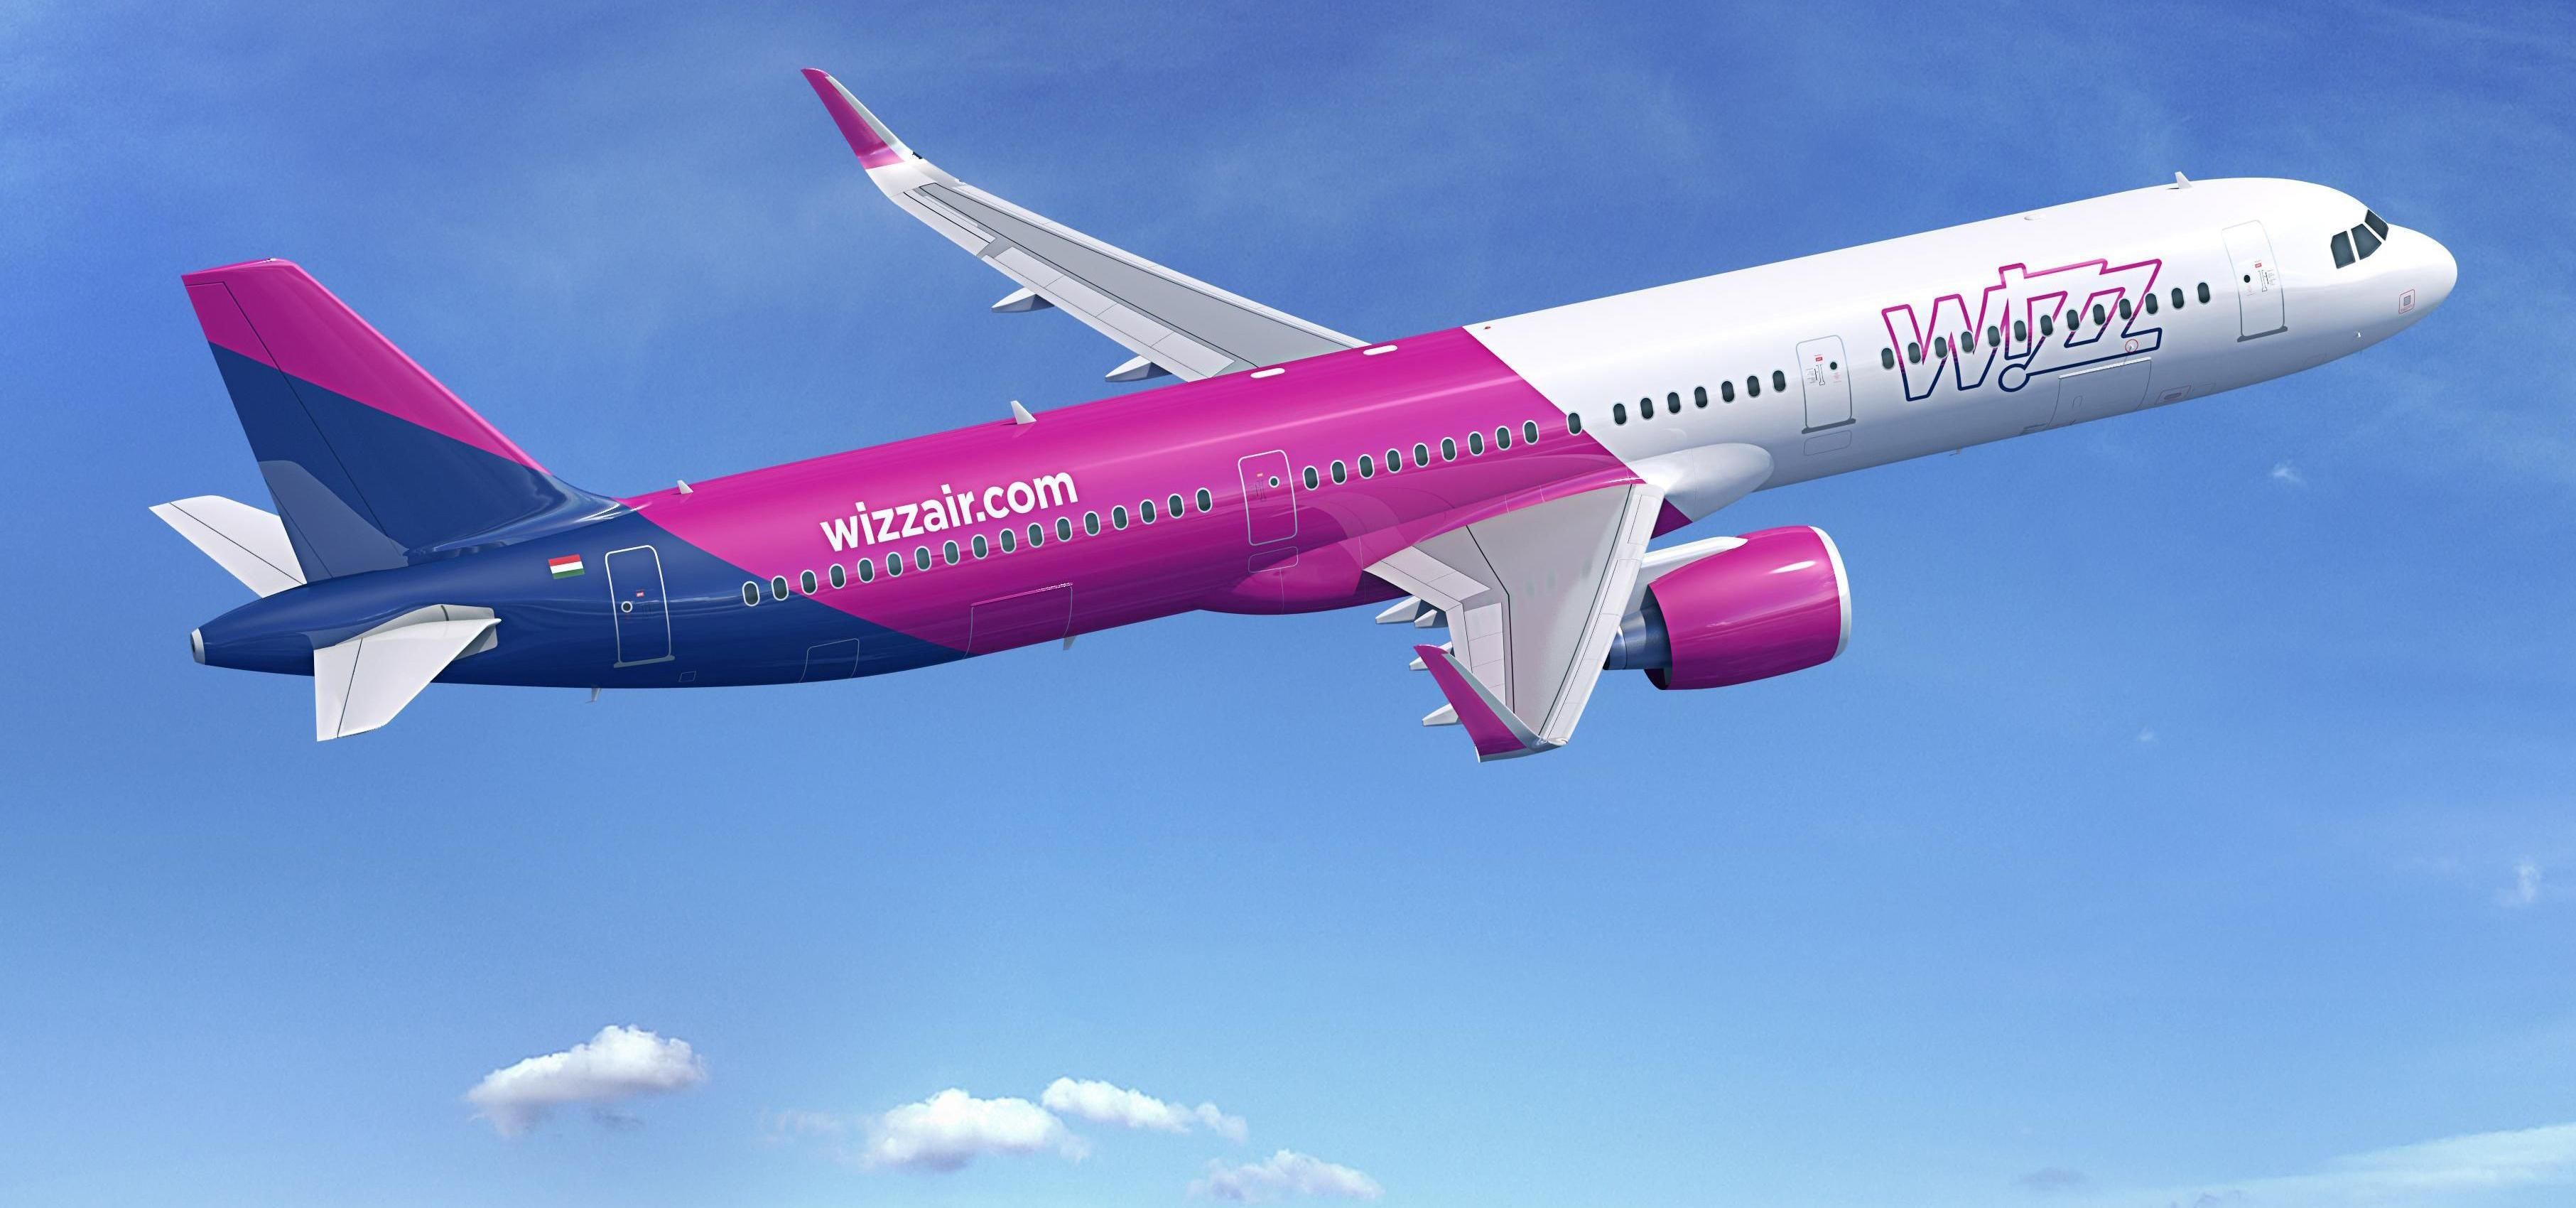 В Wizz Air обновили проездные: какой бонус ждет туристов - Закордон